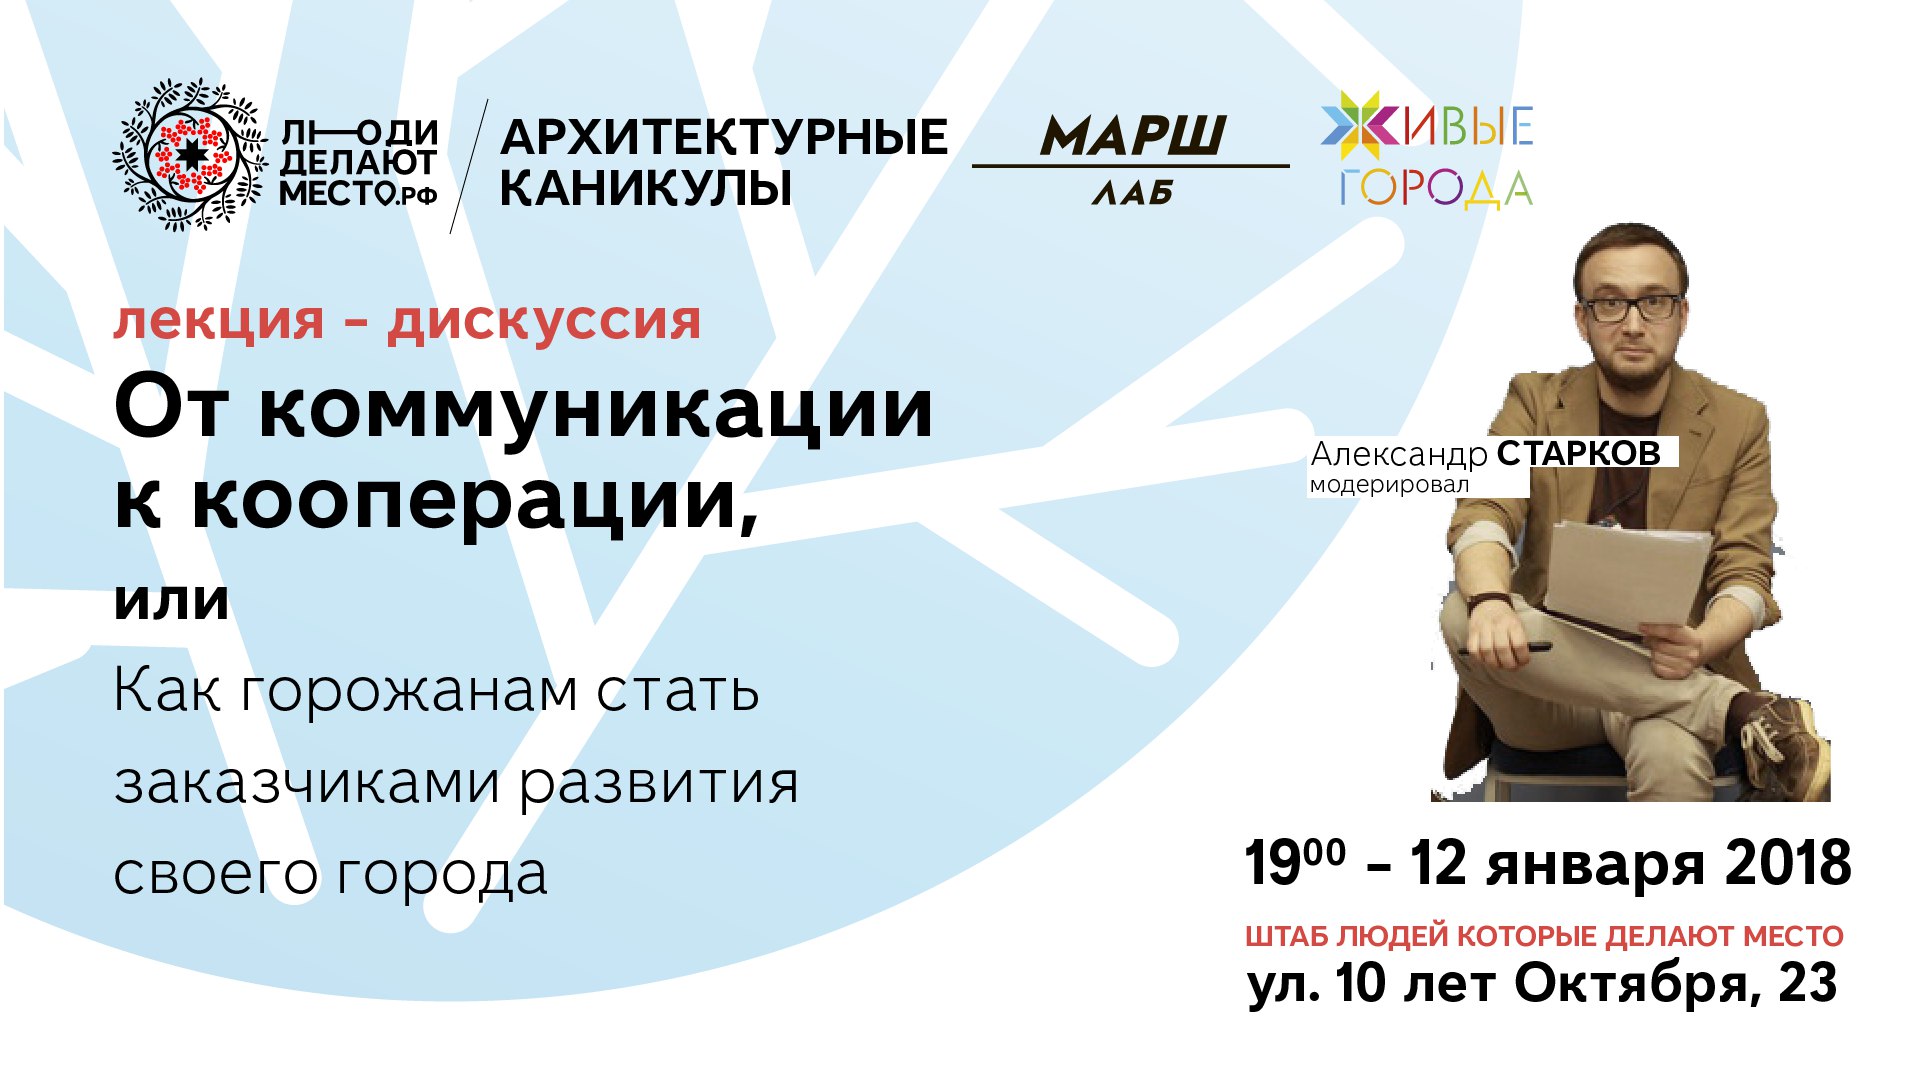 10—14 января 2017 года в Ижевске пройдёт воркшоп «Архитектурные каникулы», в ходе которого будет продолжена работа над проектированием сквера за Администрацией города Ижевска